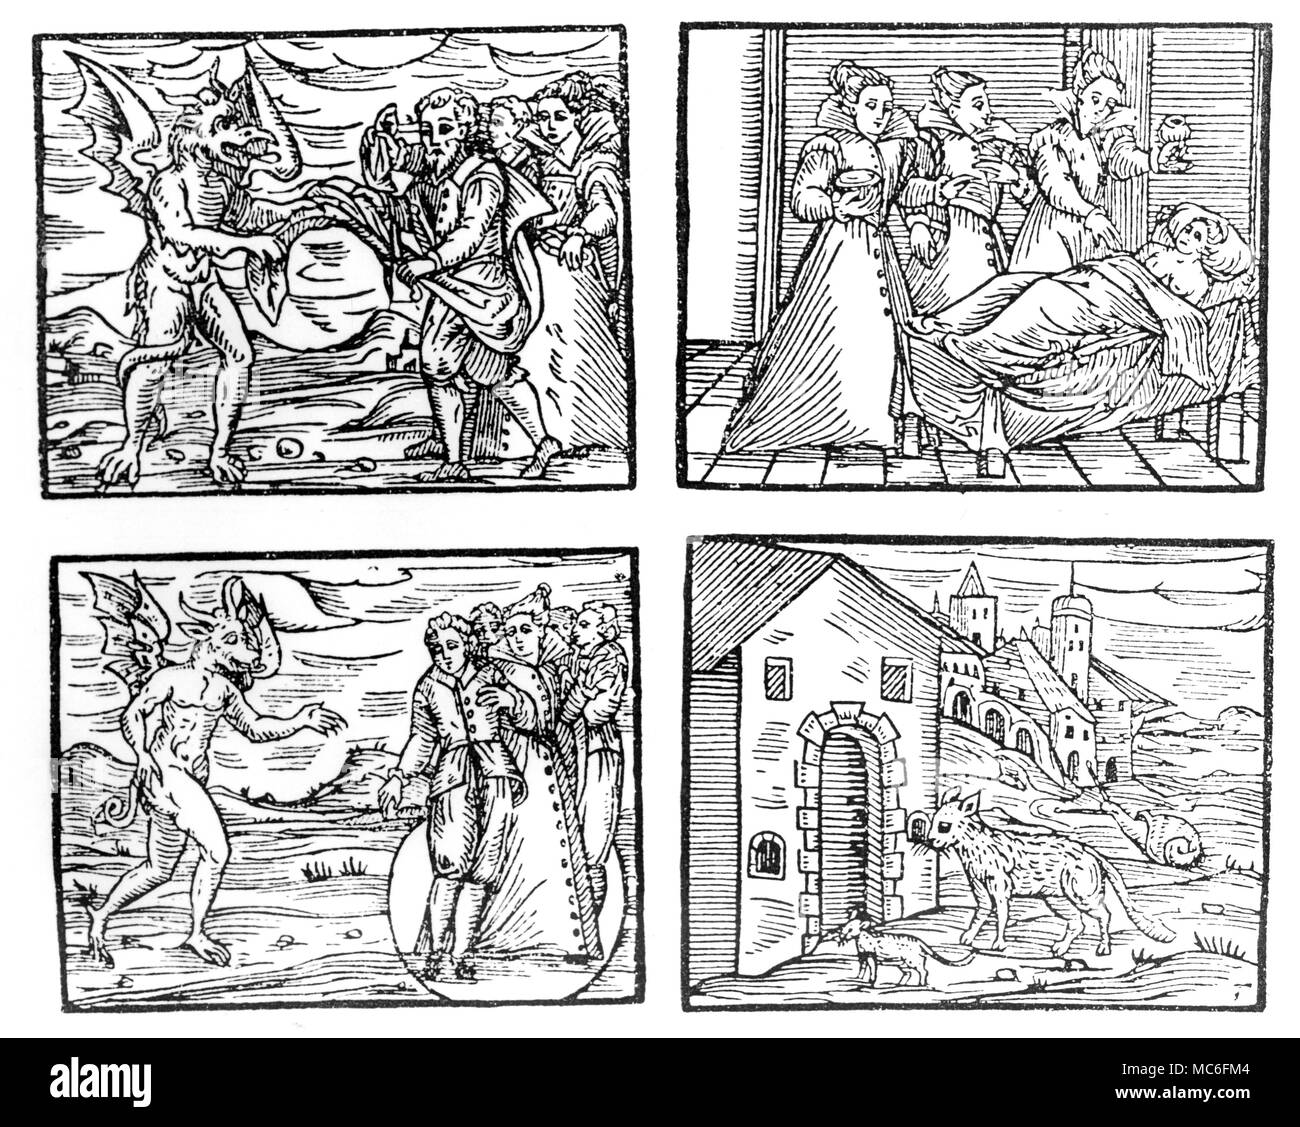 Hexerei, von Der 1608 von eition Guazzo's Kompendium Maleficarum' - Hexen ihre Kleider zu Teufel. Hexen Vergiftung schlafende Frau. Hexen im Magic Circle. Hexen verwandelten sich in verschiedene Tiere. Stockfoto